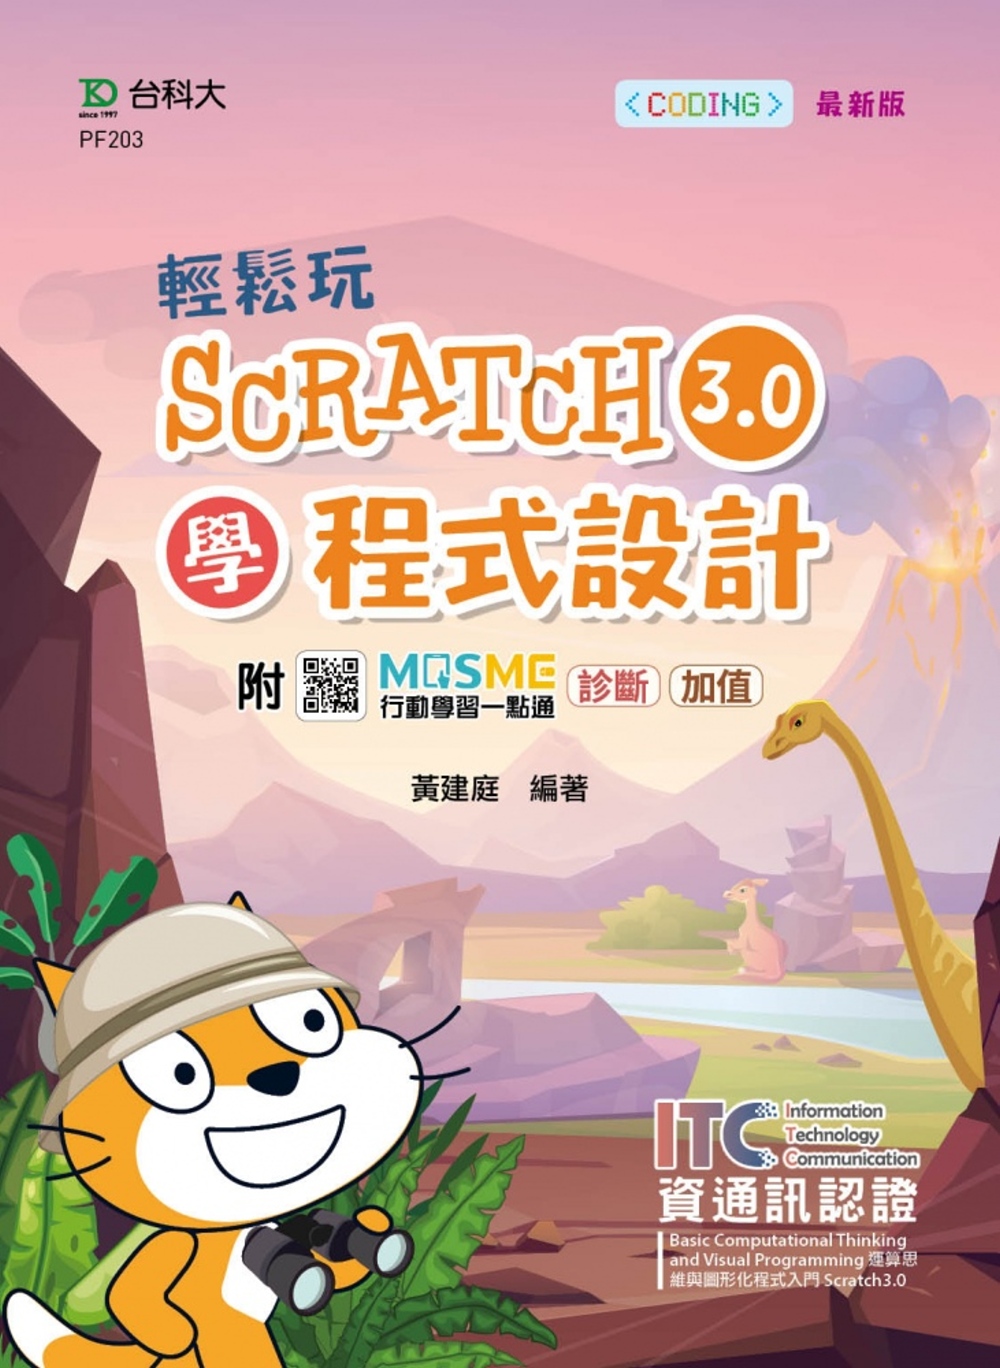 輕鬆玩Scratch3.0學程式設計 - 含ITC資通訊認證Basic Computational Thinking and Visual Programming運算思維與圖形化程式入門 Scratch3.0 - 最新版 - 附MOSME行動學習一點通：診斷.加值